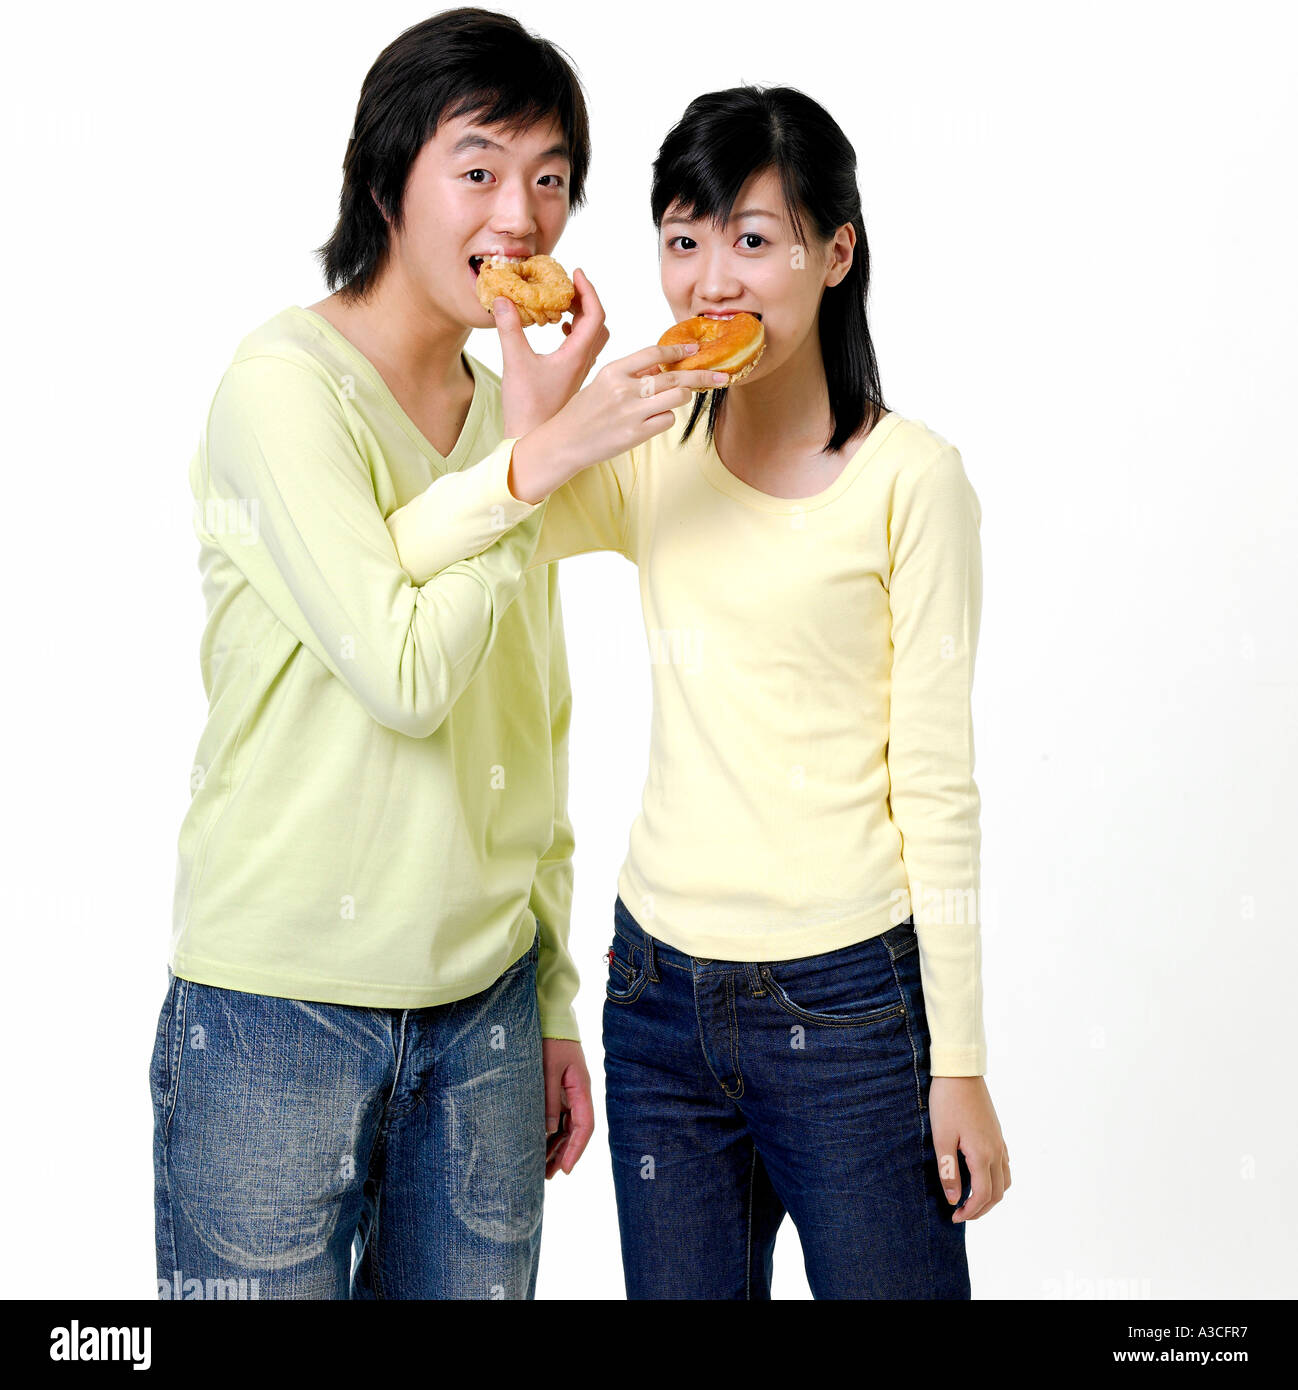 Teens sharing donuts Stock Photo